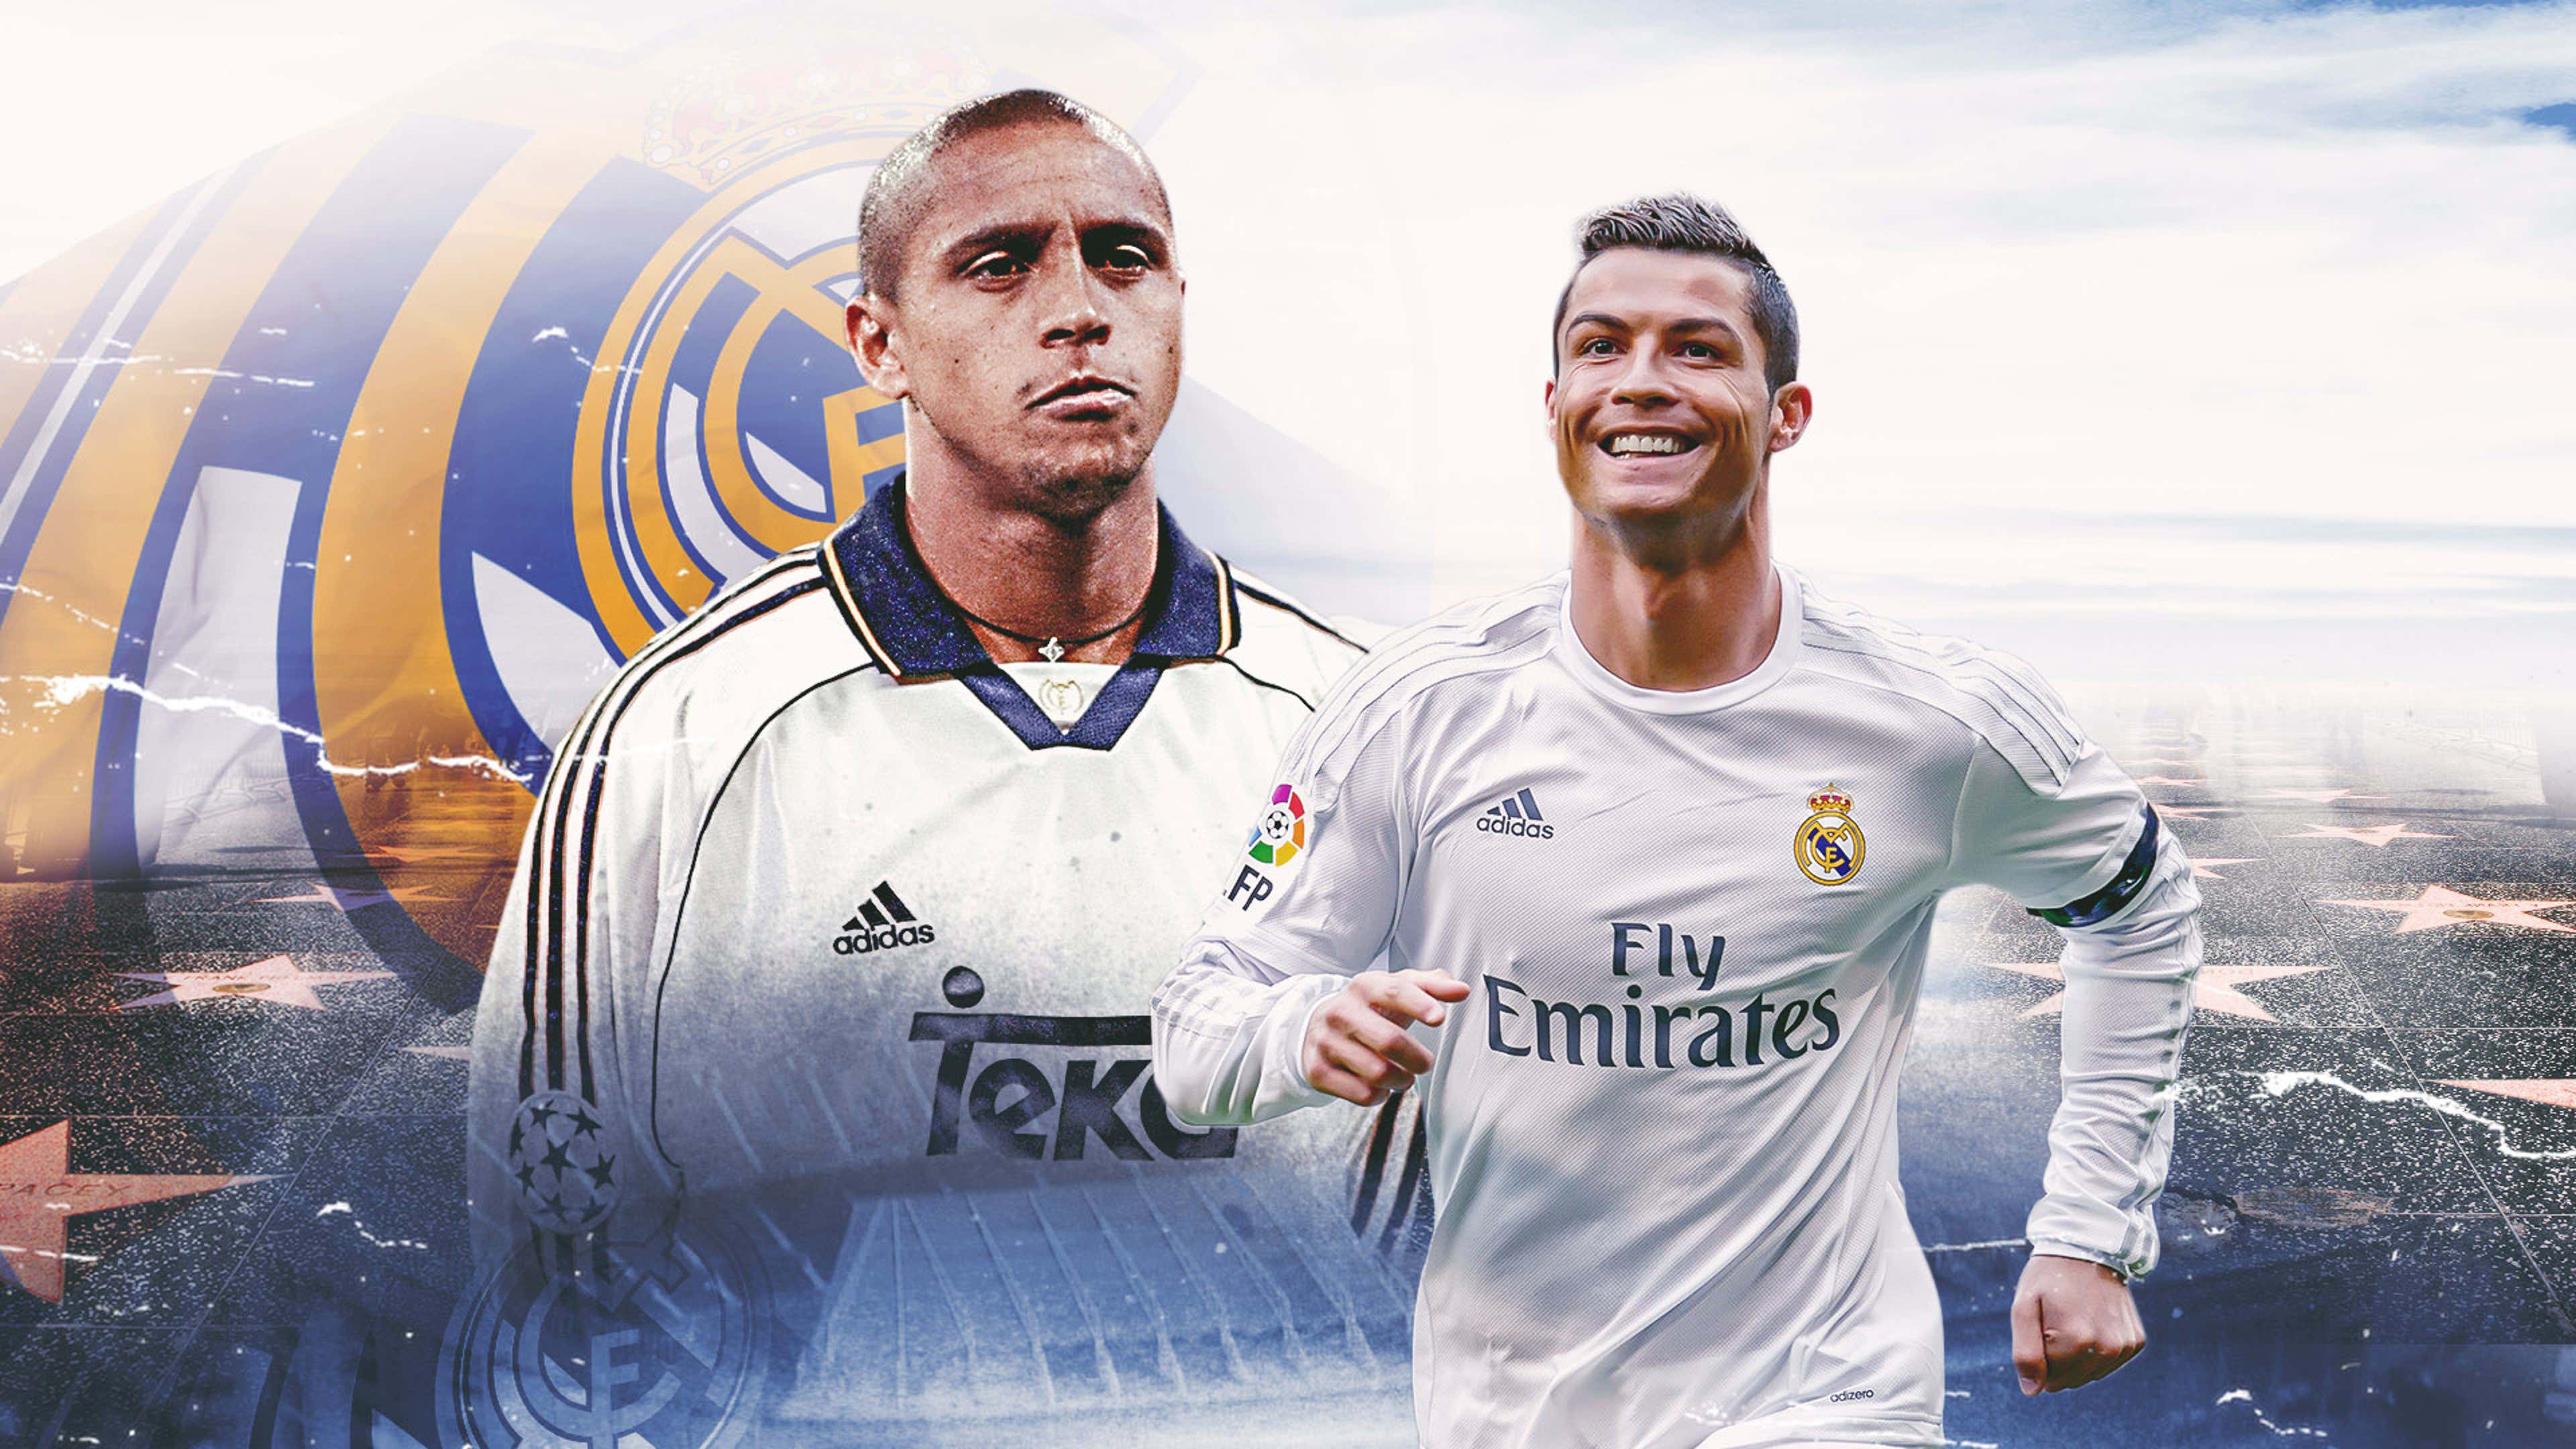 https://assets.goal.com/v3/assets/bltcc7a7ffd2fbf71f5/blt558efe5112f85760/63ca0a88077eba6e64ff5e56/Dream_Teams_Real_Madrid_Roberto_Carlos_Cristiano_Ronaldo.jpg?auto=webp&format=pjpg&width=3840&quality=60